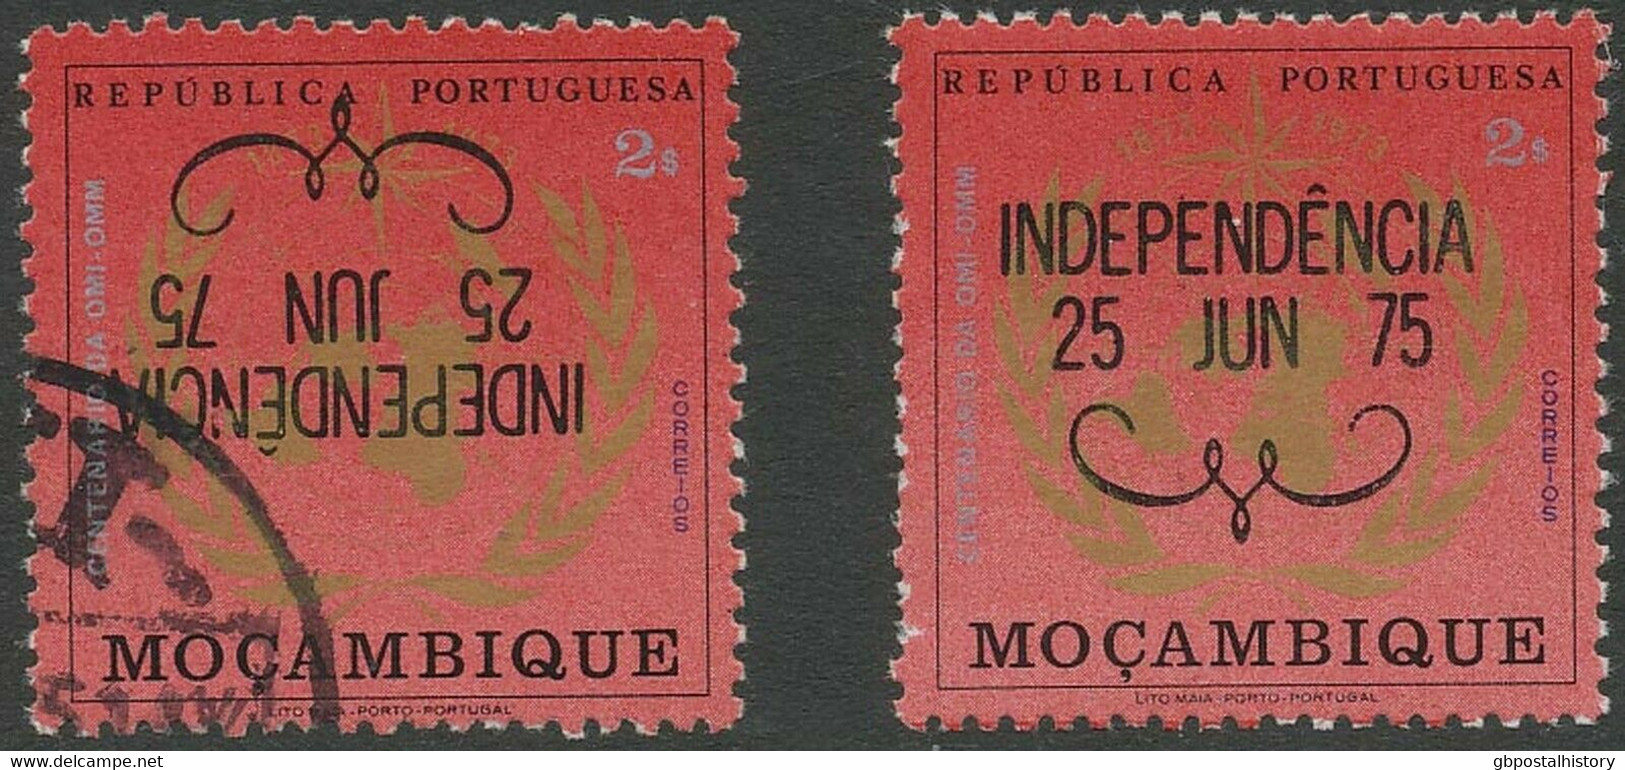 MOSAMBIK 1975, Unabhängigkeit 2 E. ABART (Michel Bisher Unbekannt): Kopfstehender Aufdruck   "INDEPENDÊNCIA / 25 JUN 75" - Mozambique